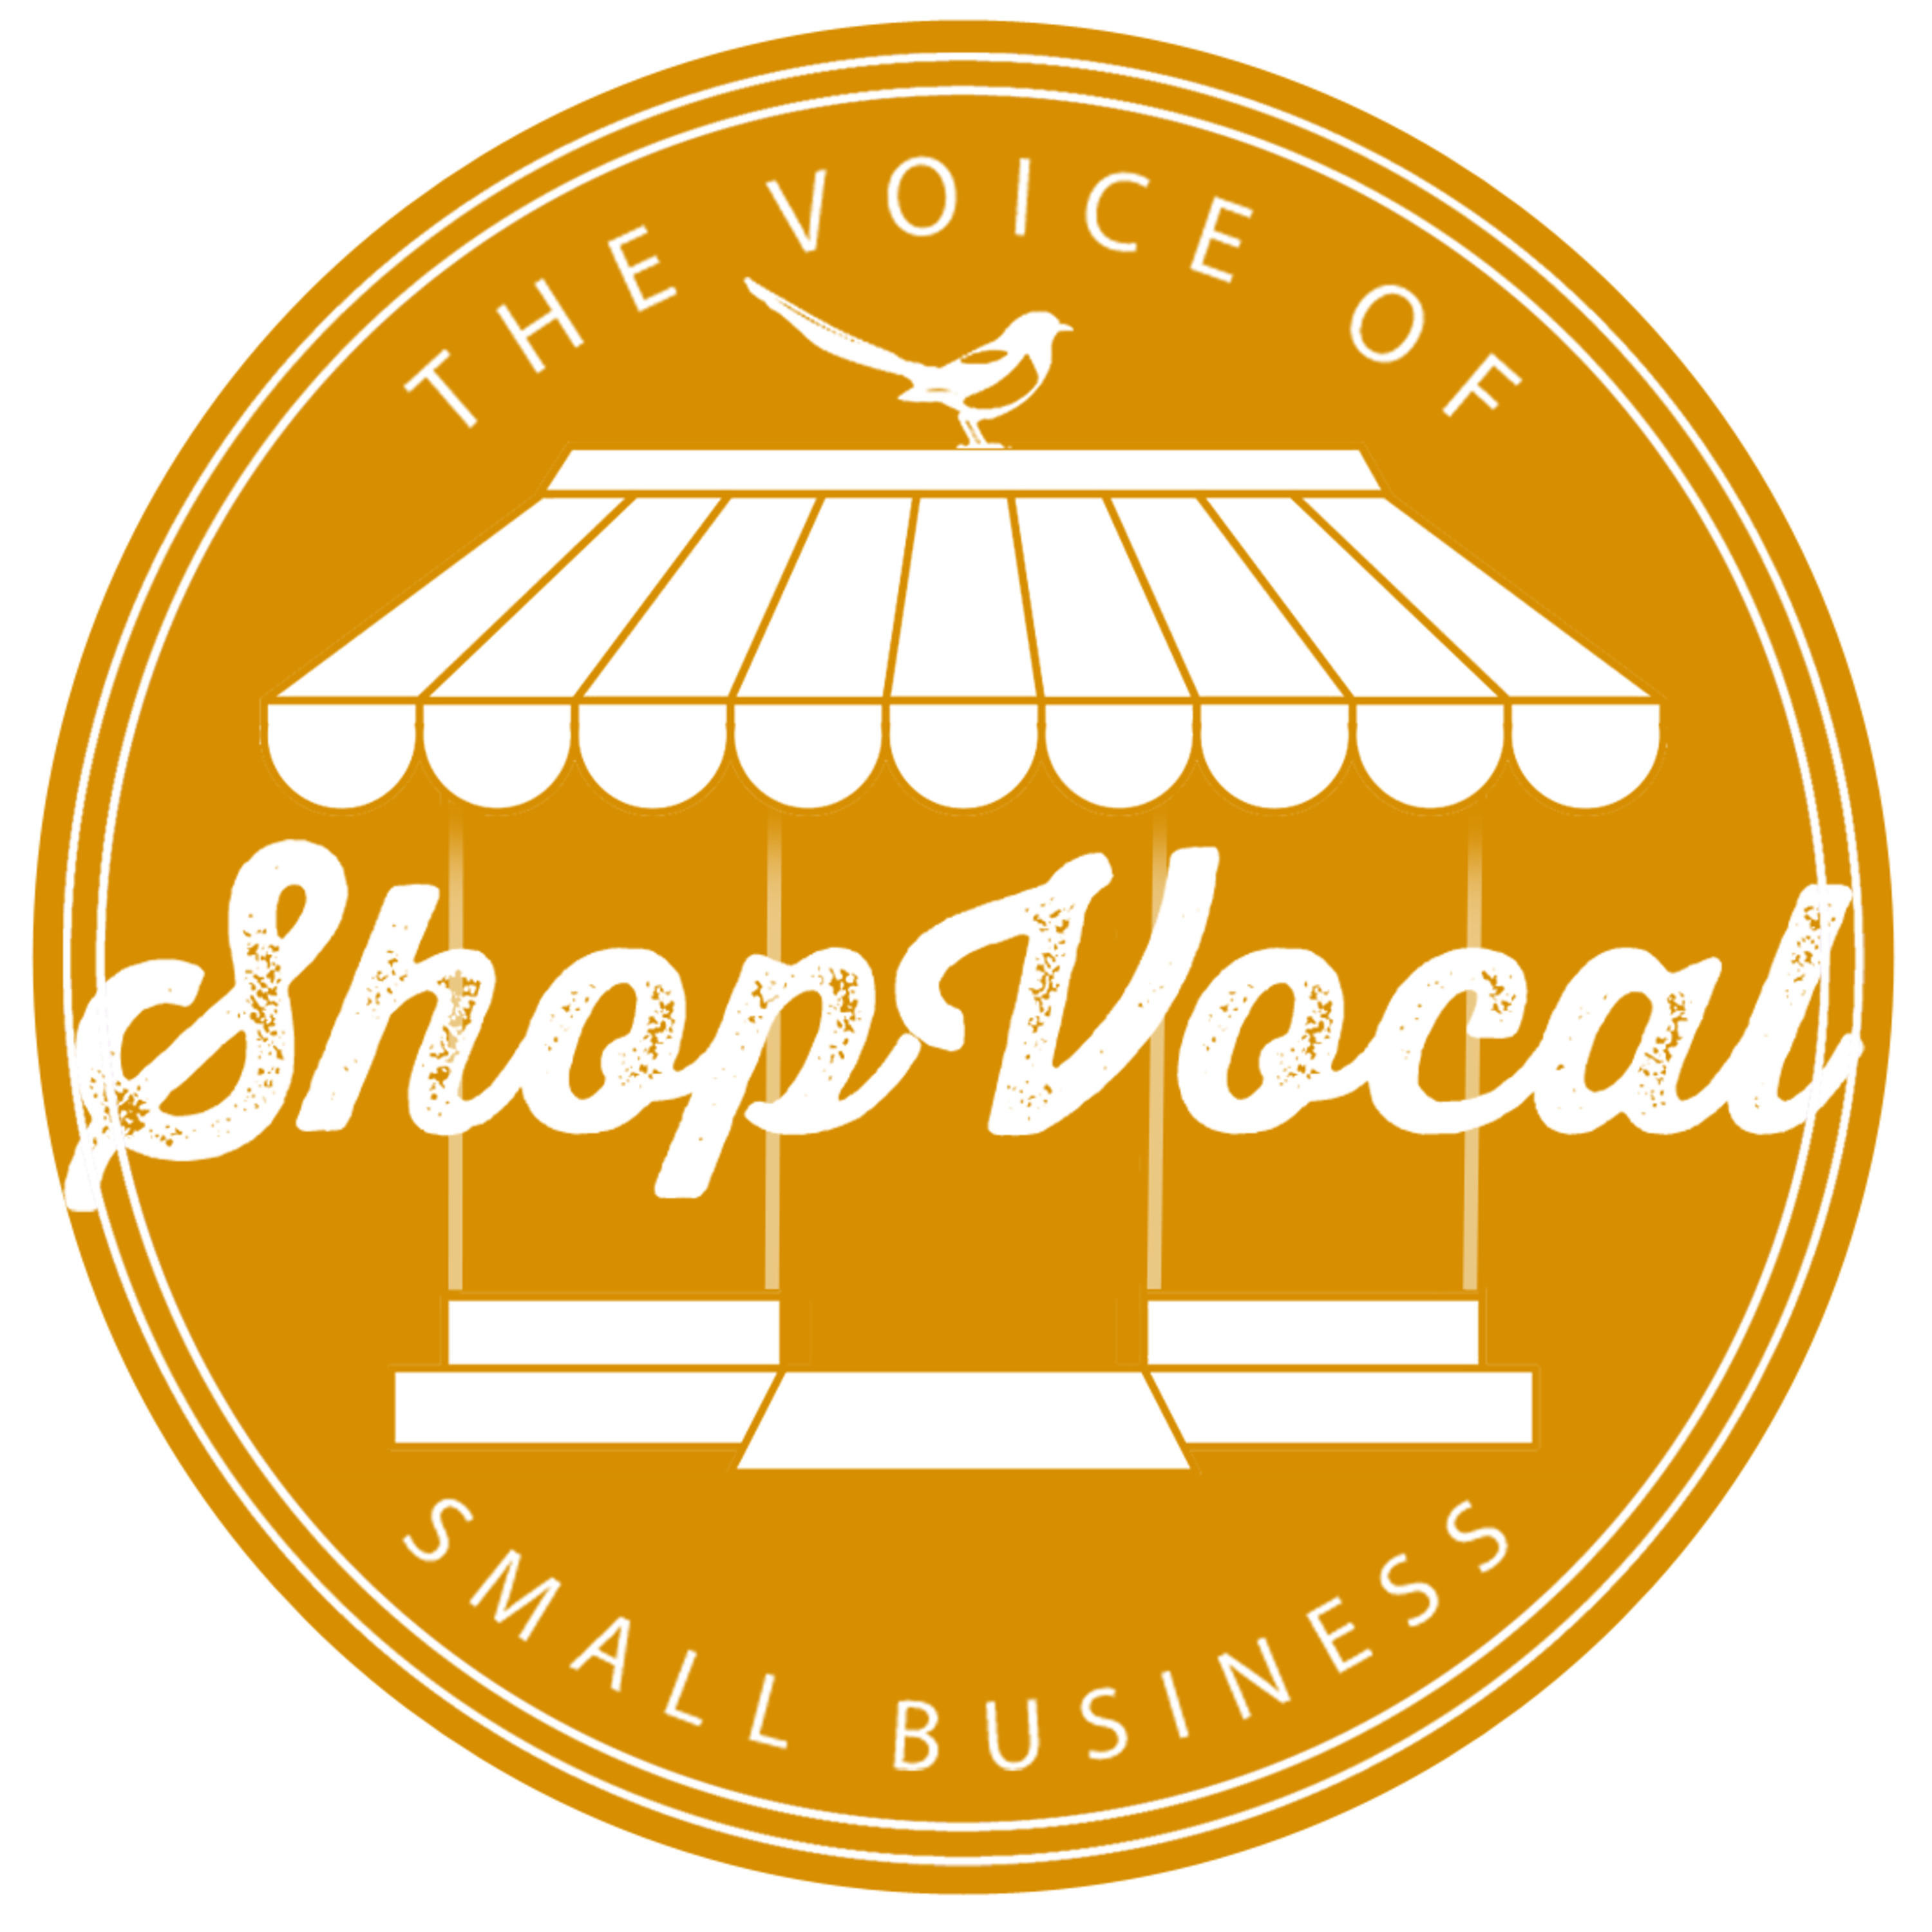 Blogcast: Voice Basics - Shop Vocal Voice Search is Better - burst 1